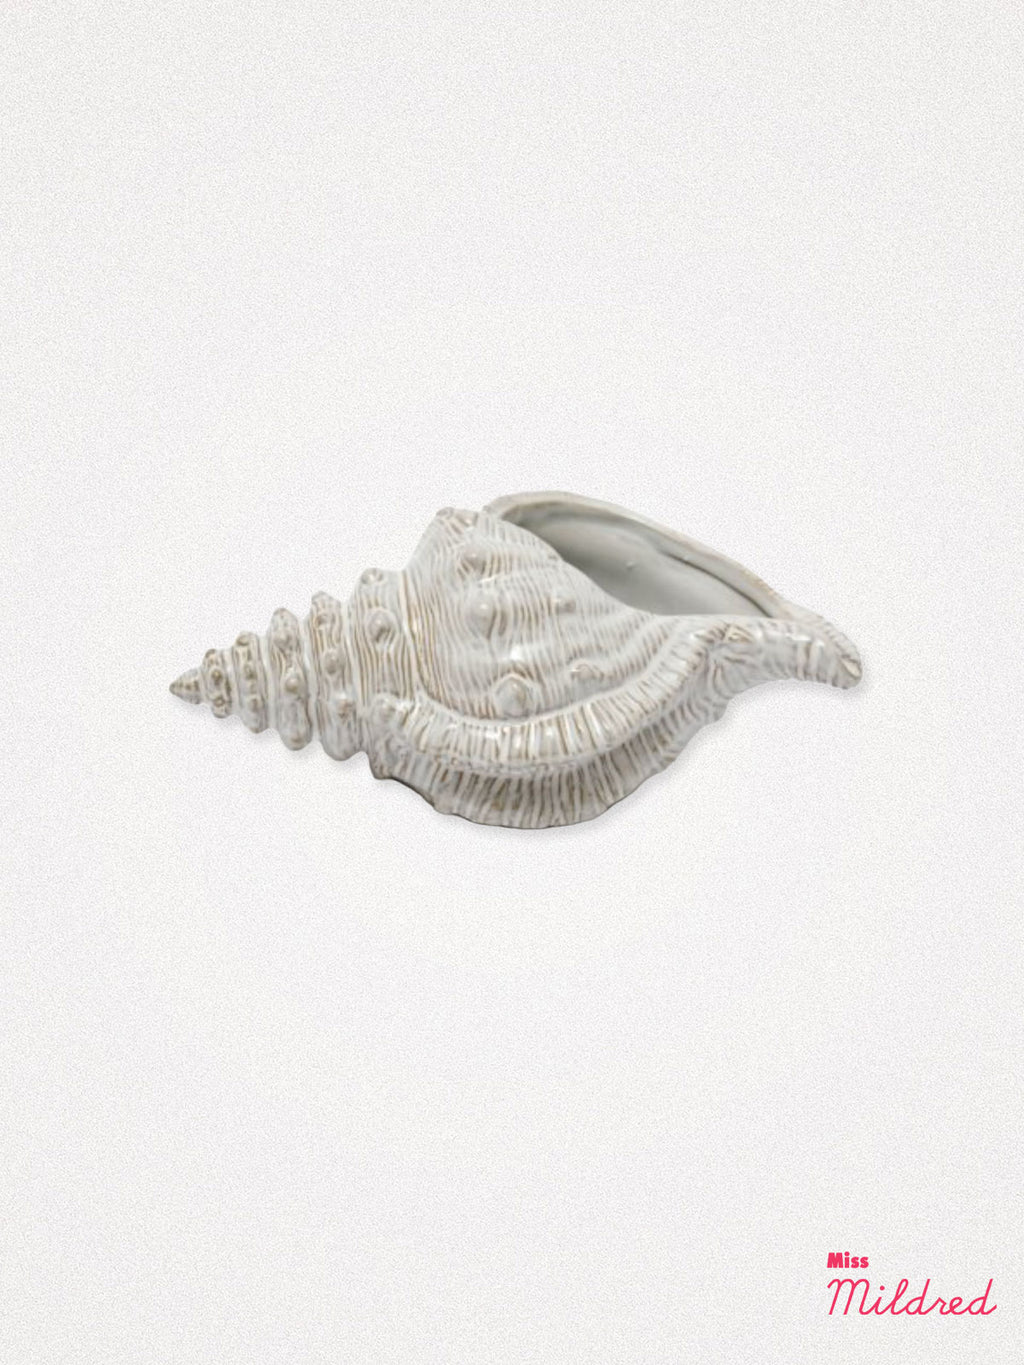 Conch Shell Ornament